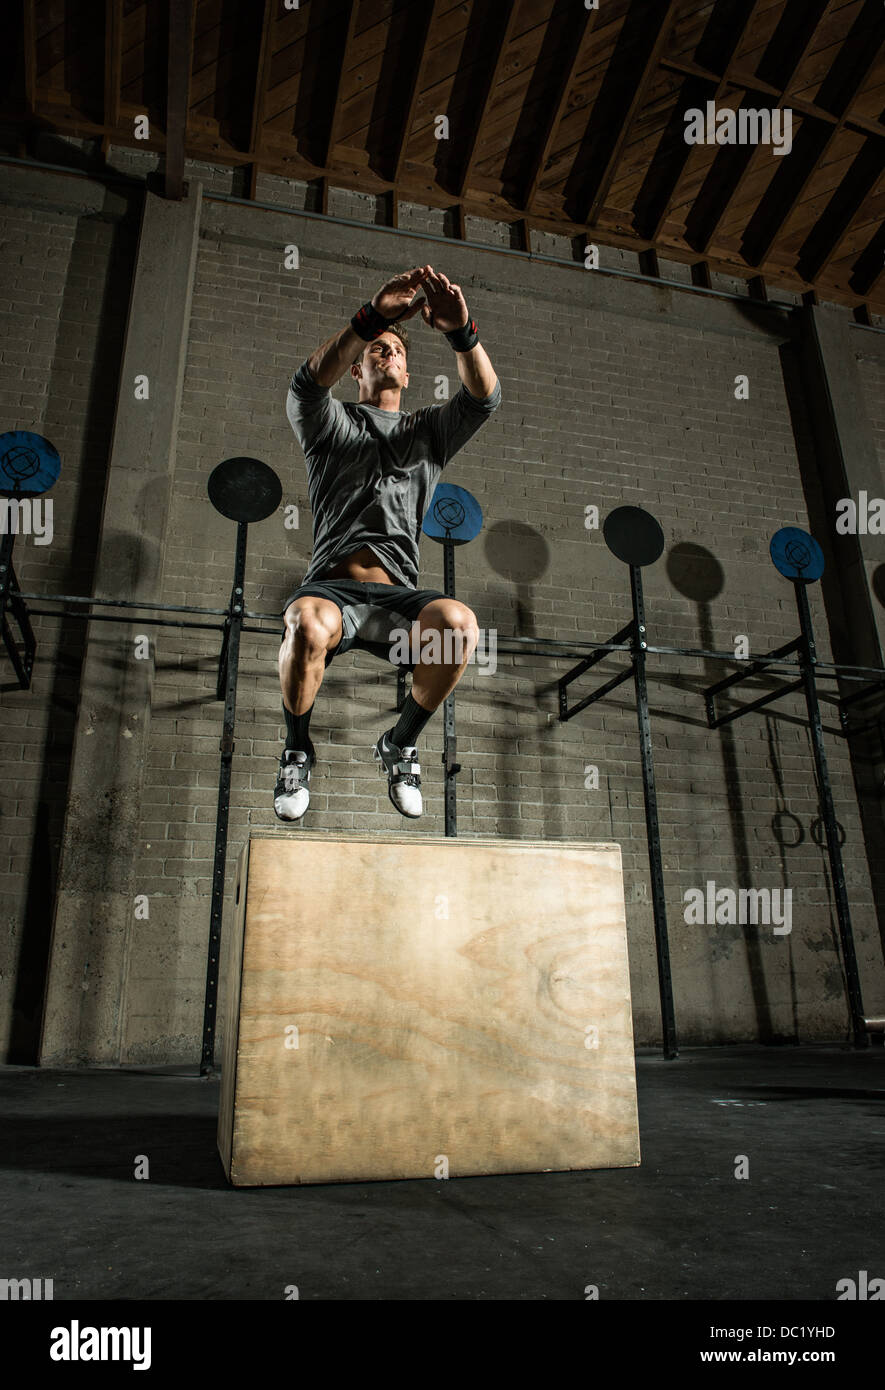 Jeune homme sautant d'un coffret en bois dans une salle de sport Banque D'Images